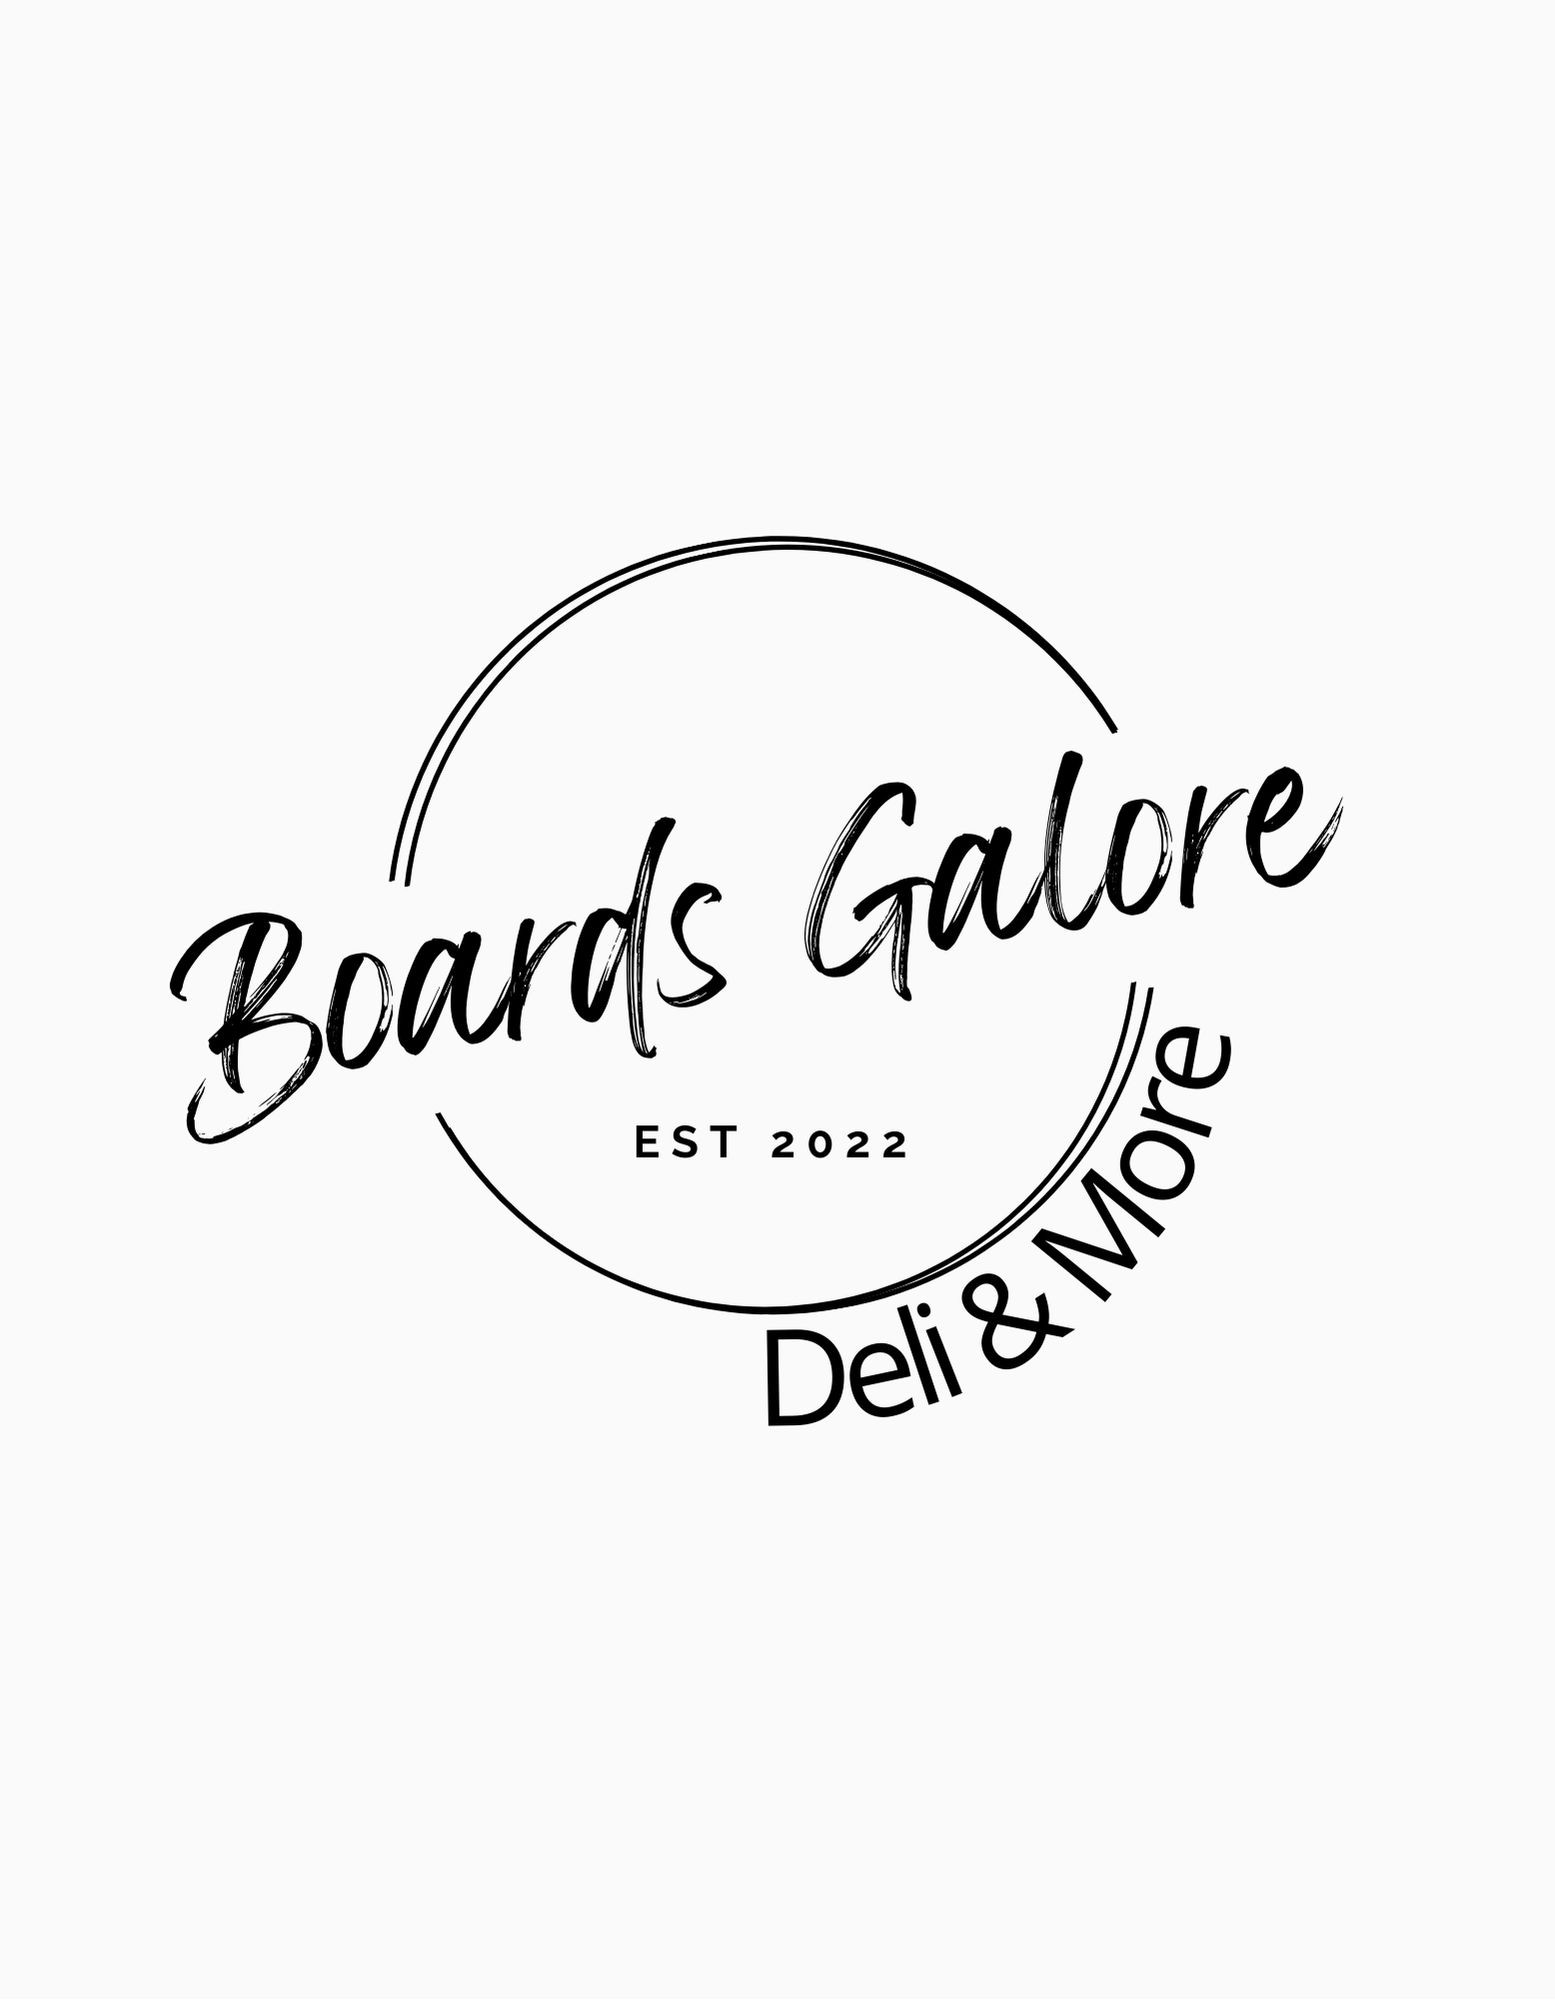 Boards Galore Deli & More n/a